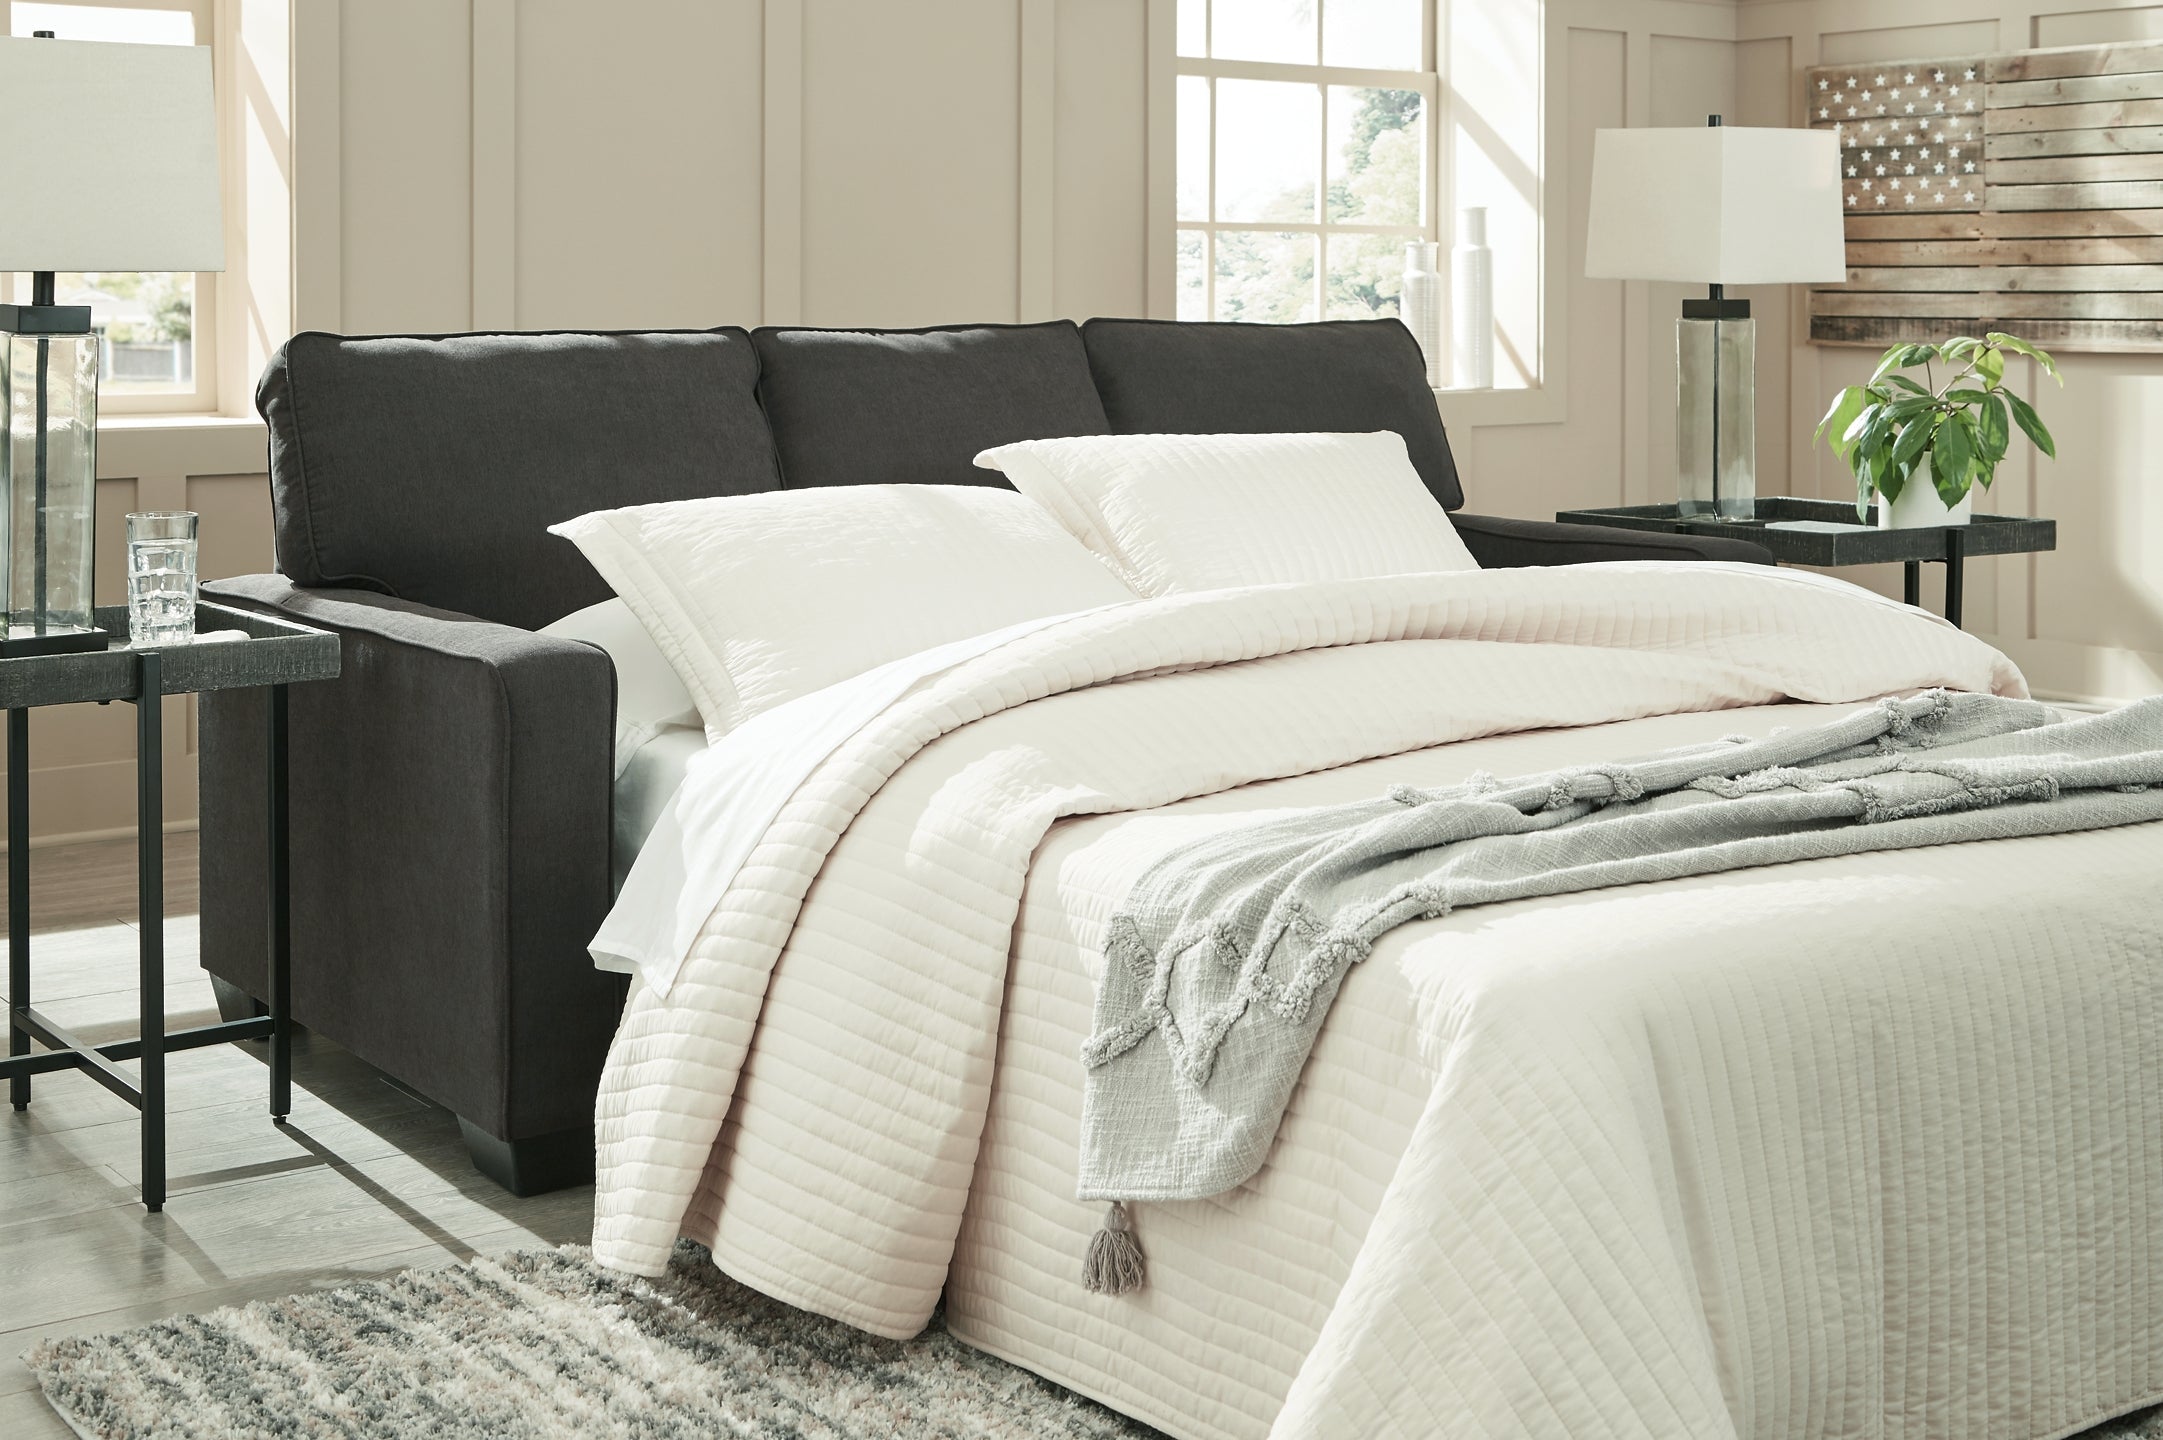 Sleeper Sofa Smart Furniture And